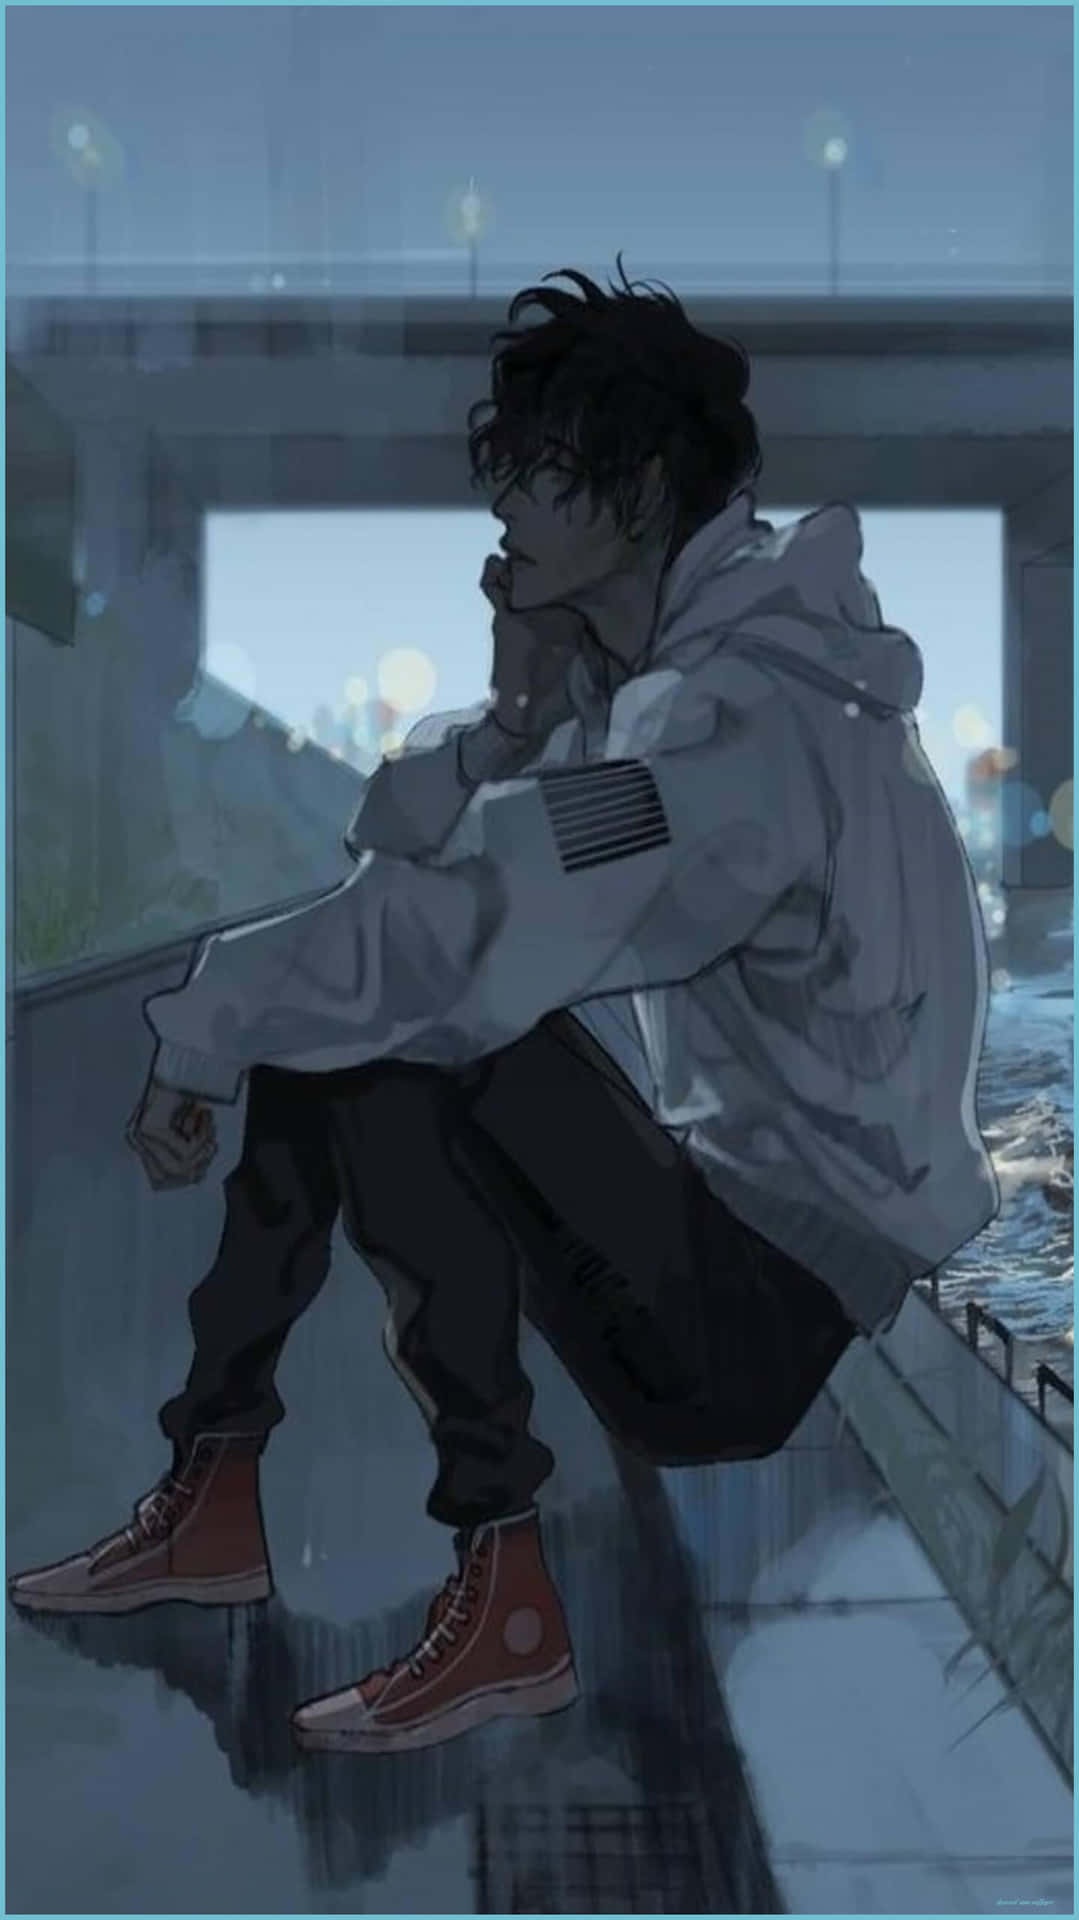 Sad Depressing Anime Boy Alone Background